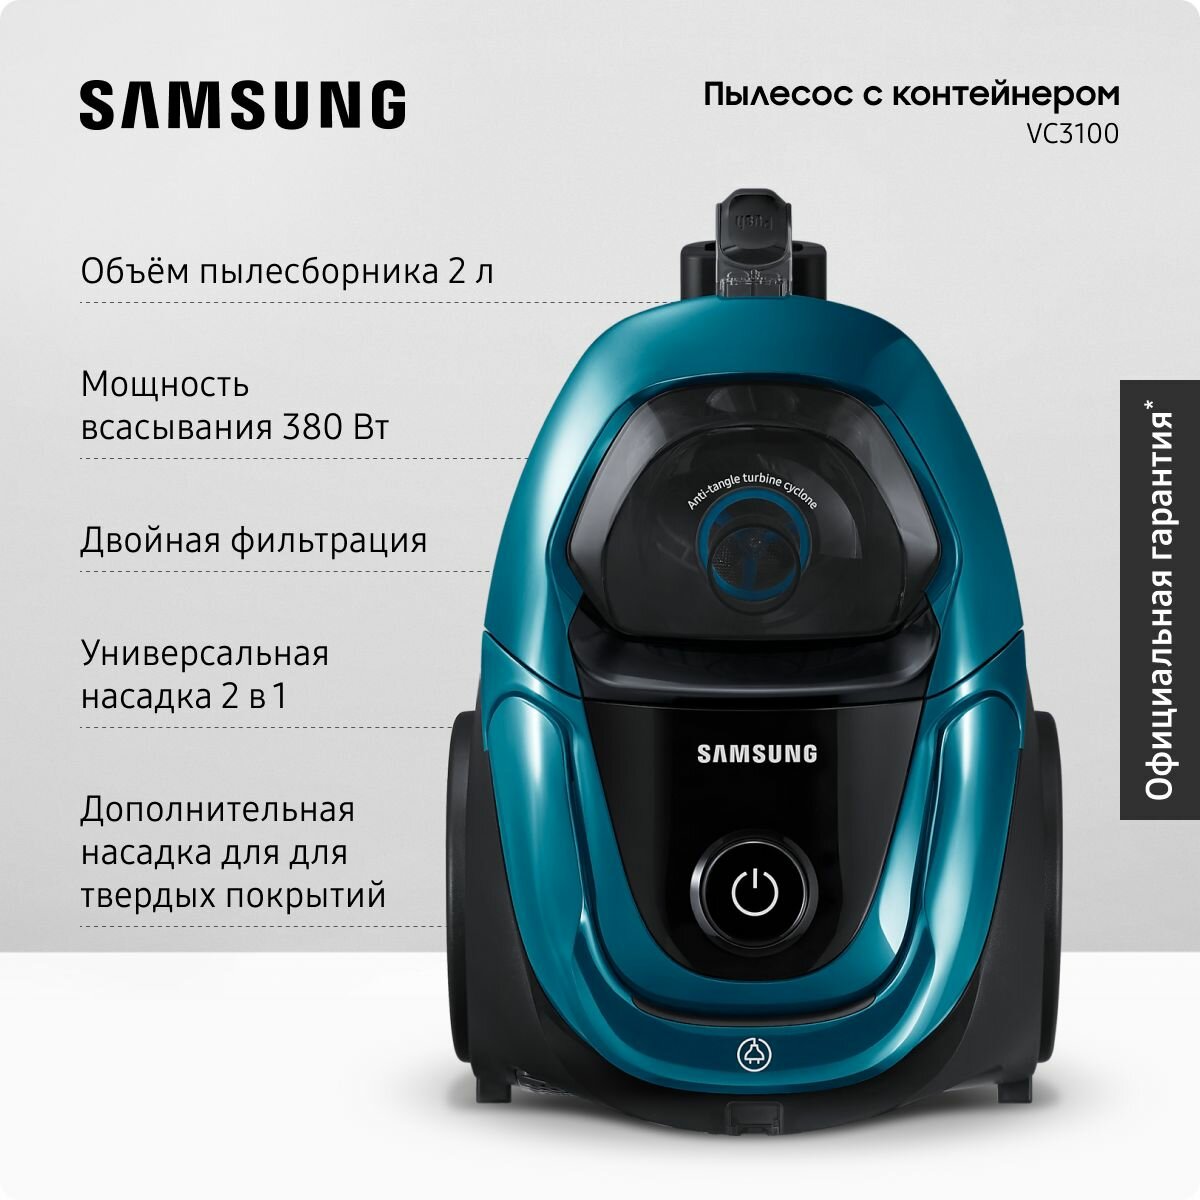 Пылесос для дома Samsung VC18M31B0HN/EV 1800 Вт мощность всасывания 380 Вт для сухой уборки контейнер 2 л мятно-голубой/черный